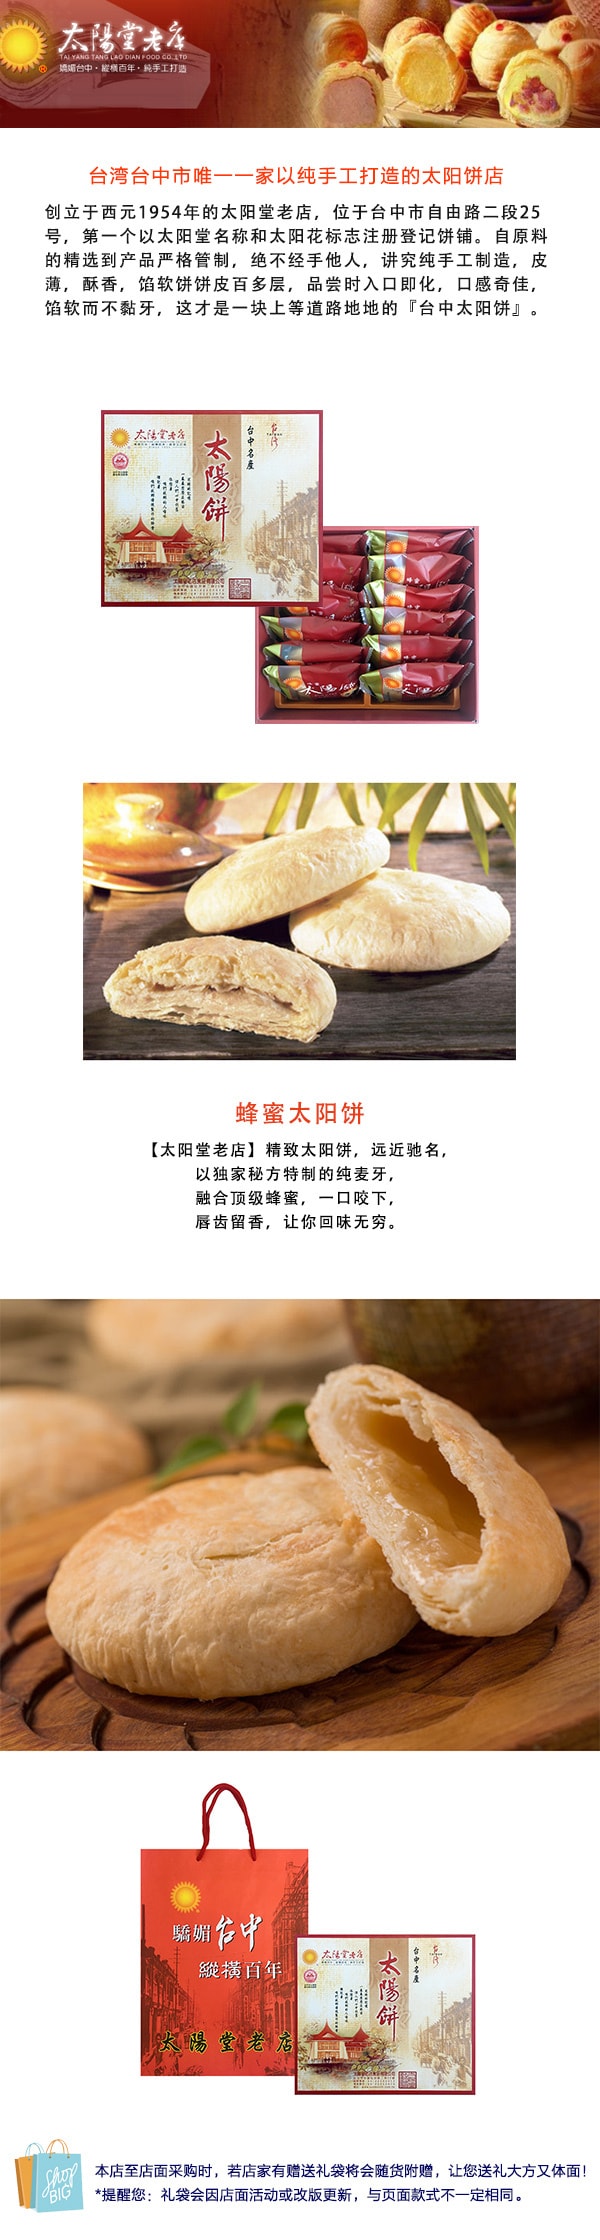 [台湾直邮] 太阳堂老店 蜂蜜太阳饼 12枚入( (订购此商品可能造成订单延误至5-7日出货)